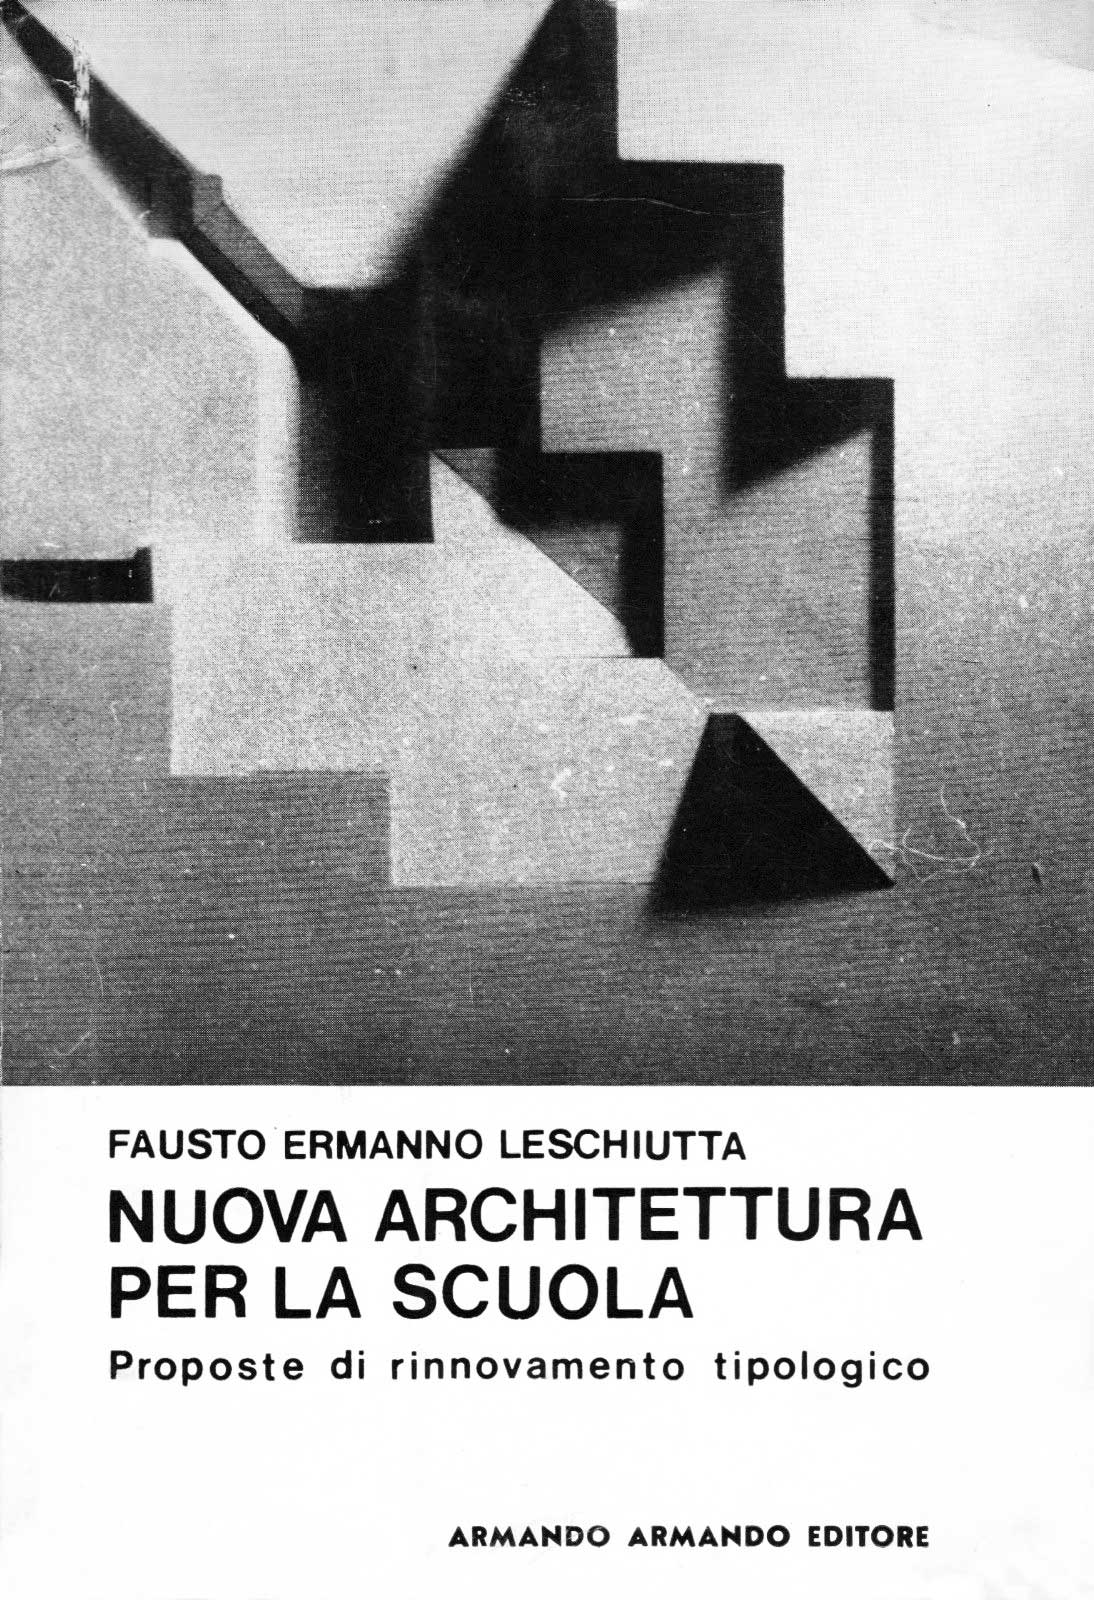 15 - Nuova architettura per la scuola. Proposte di rinnovamento tipologico, Armando Editore, Roma 1972 - Copertina